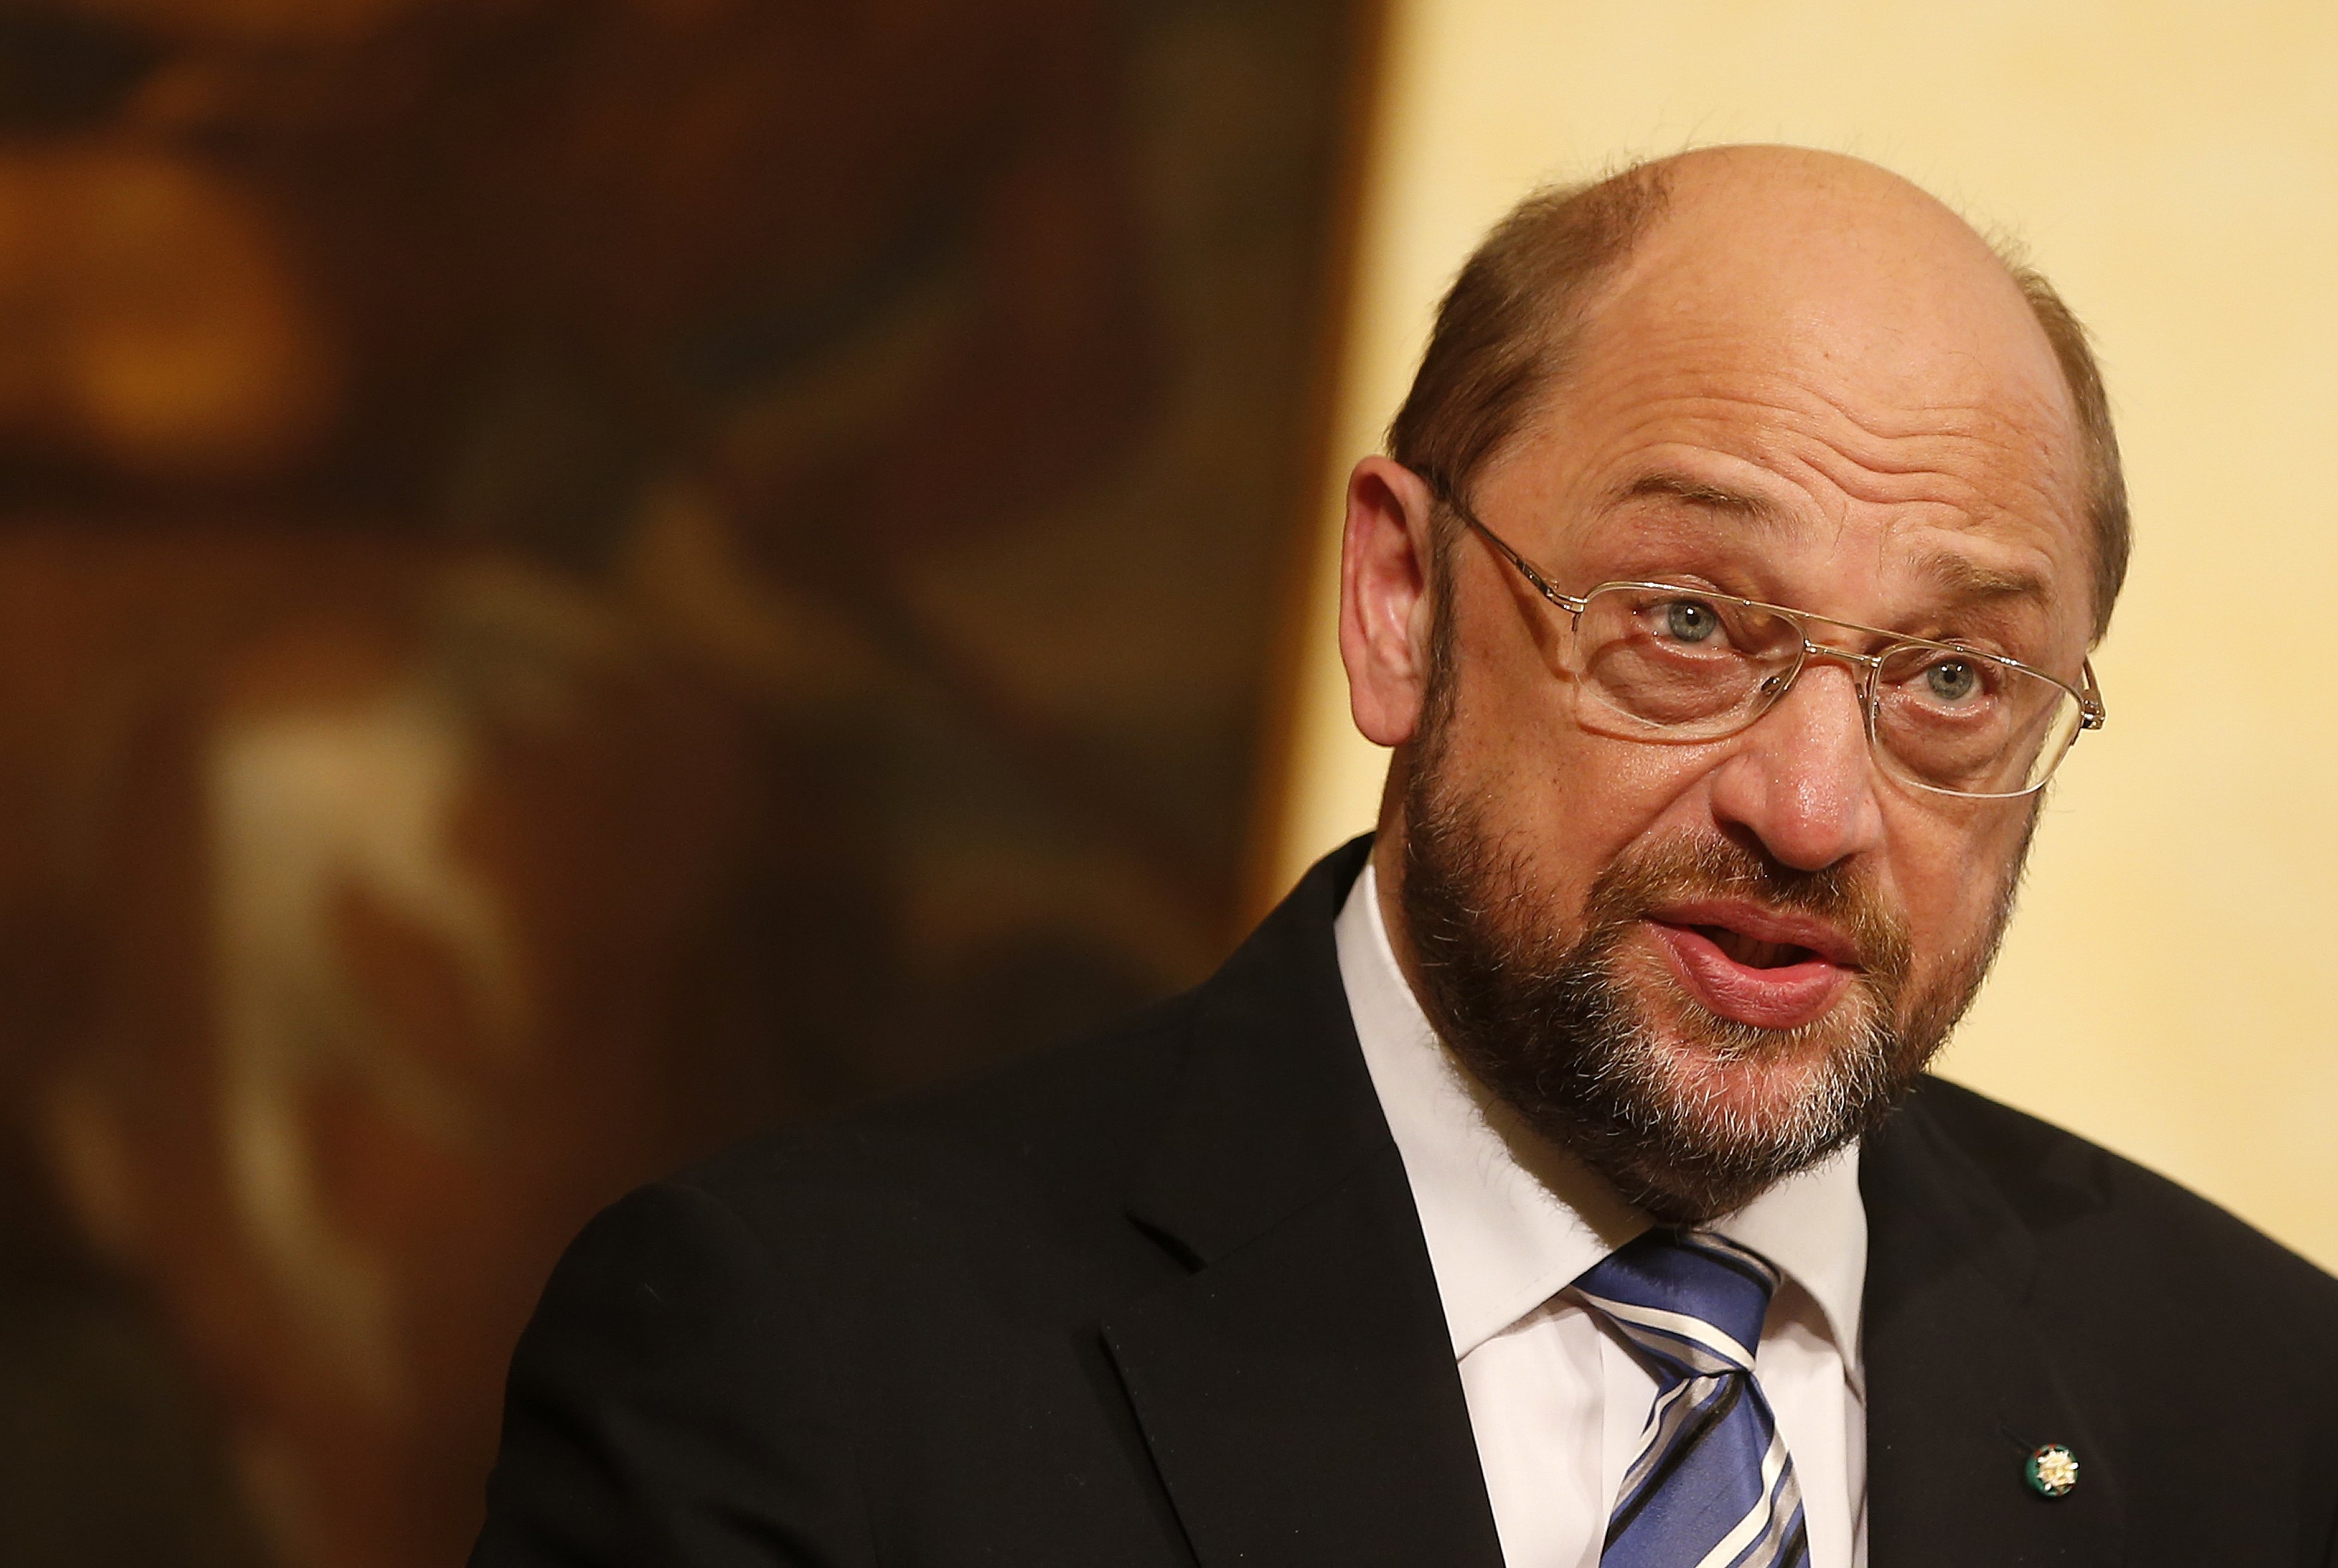 Σουλτς: “Τα μέτρα για την ανάπτυξη της ΕΕ δεν πρέπει να περιμένουν τις γερμανικές εκλογές”